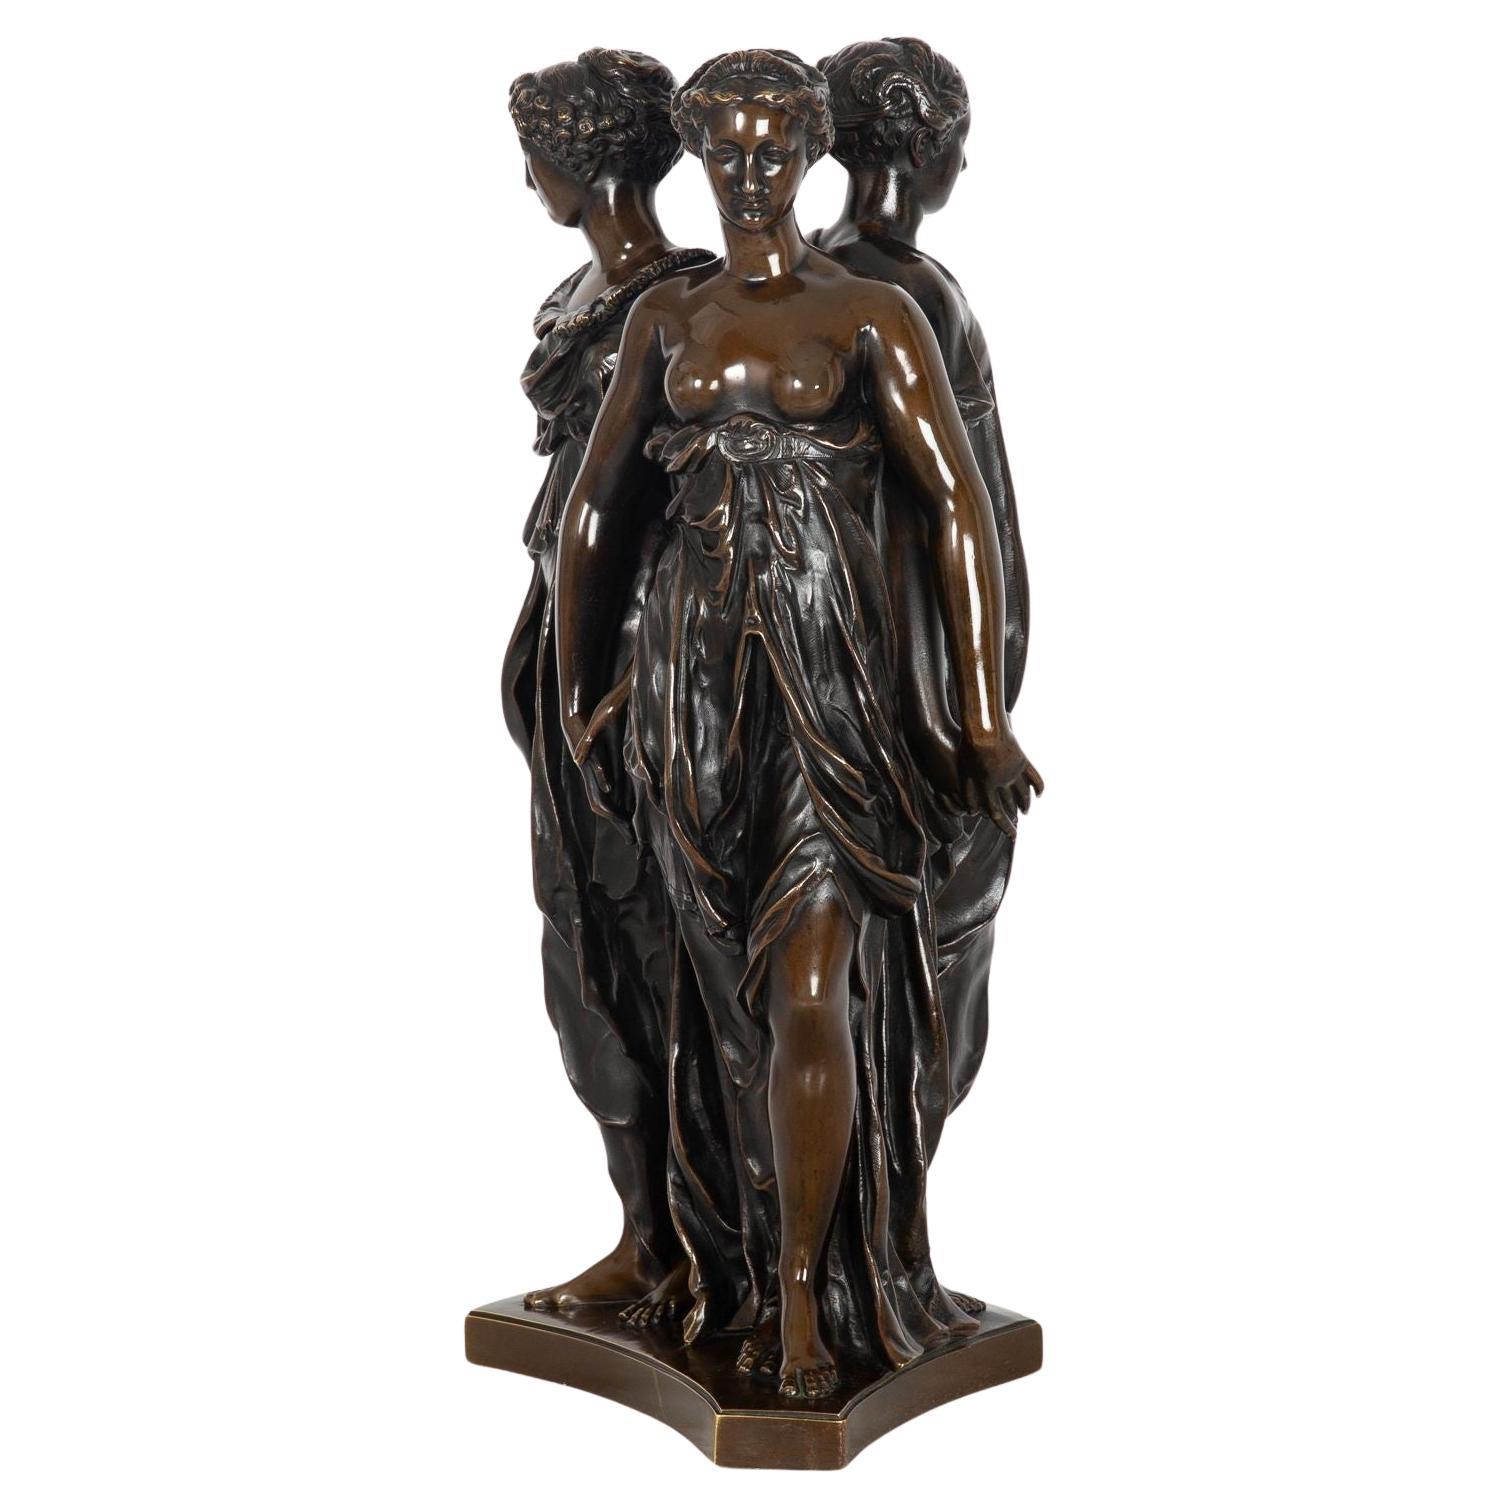 French Antique Bronze Sculpture “Three Graces” after Germain Pilon For Sale